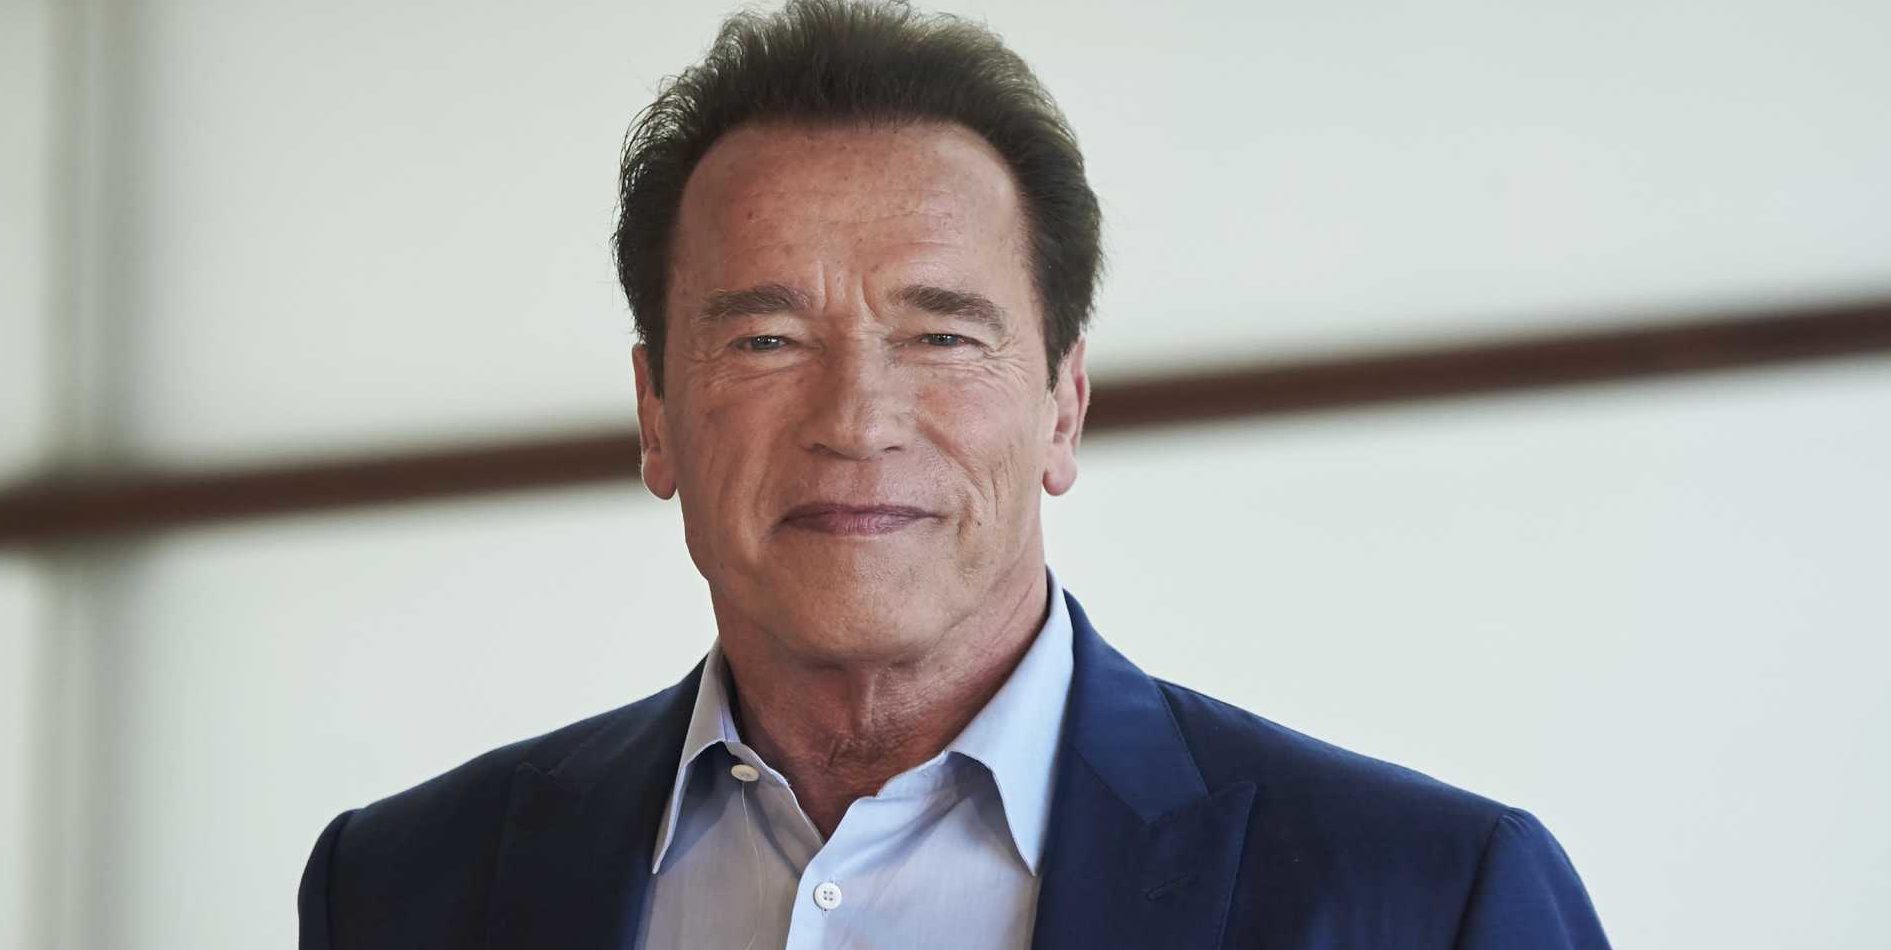 Arnold Schwarzenegger chega aos 73 anos cercado por polêmicas; veja